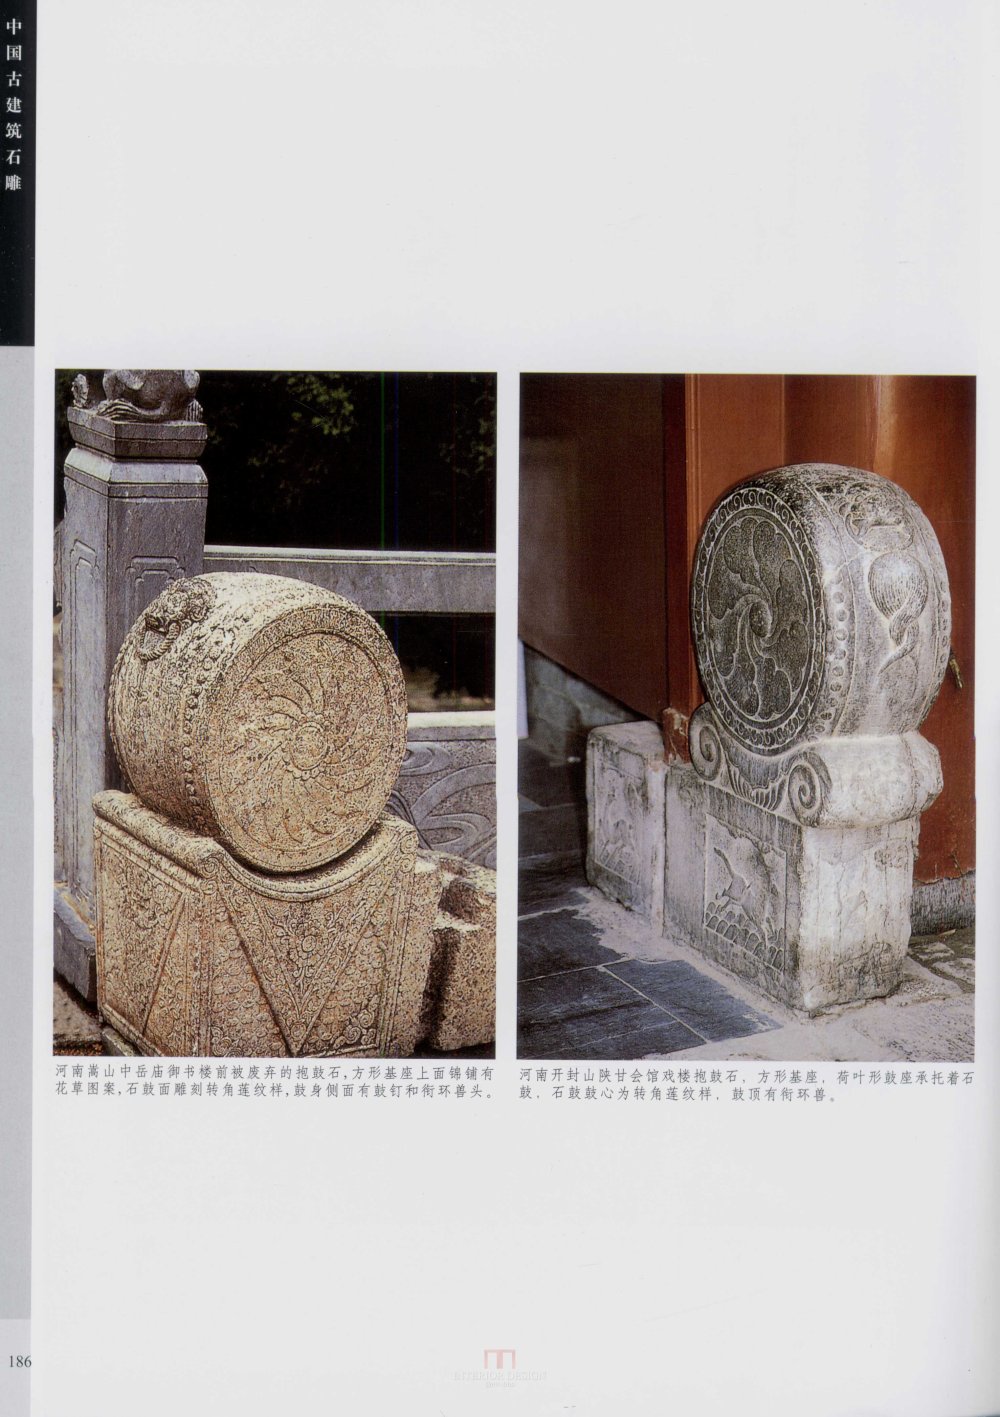 中国古代建筑 石雕_kobe 0194.jpg